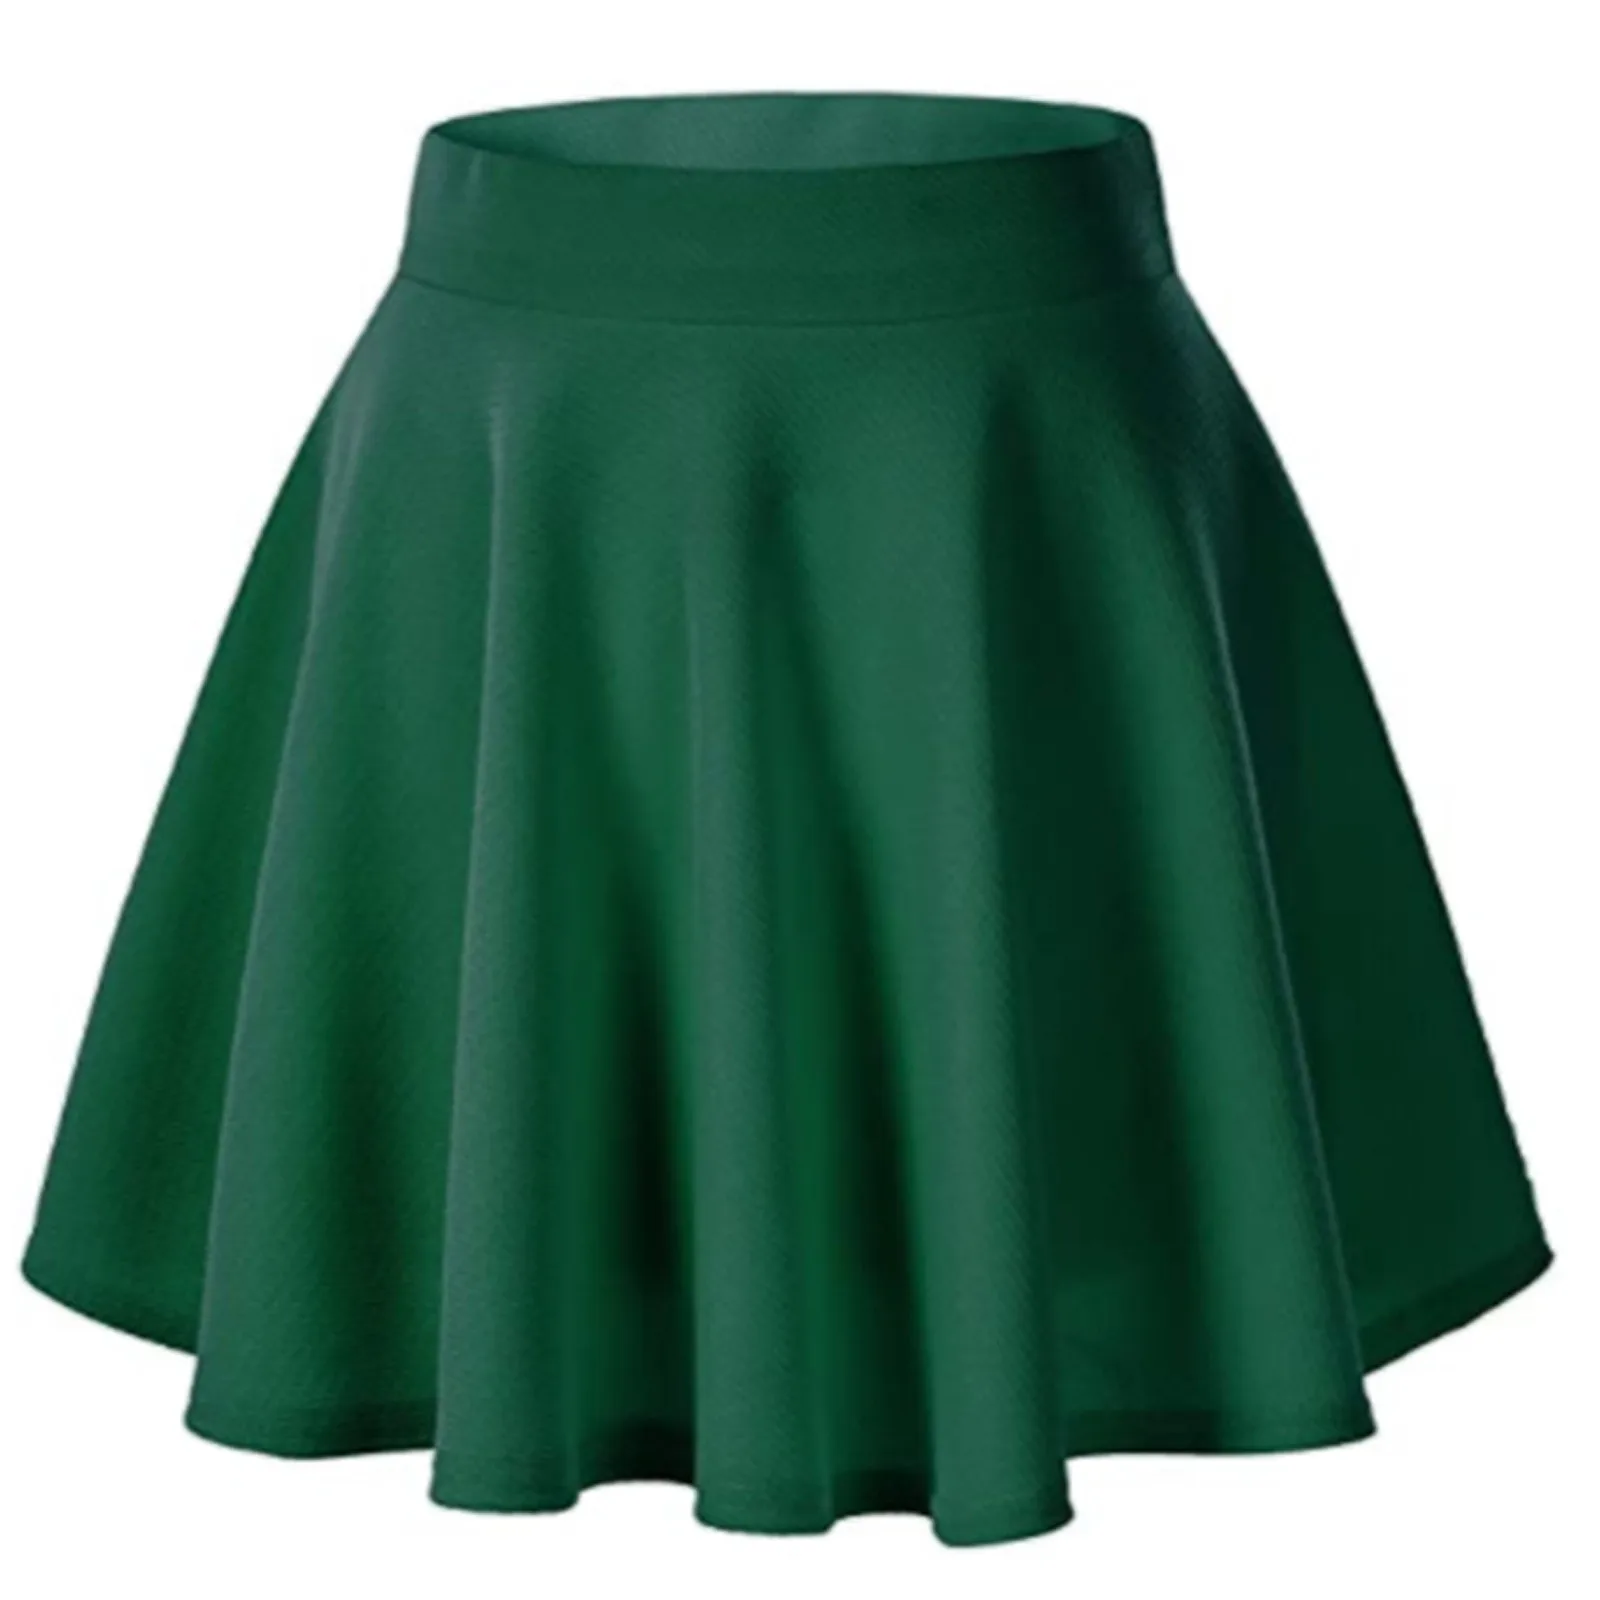 Women's Basic Versatile Stretchy Flared Casual Mini Skater Skirt Red Black Green Blue Short Skirt Plus Size 3xl Streetwear Skirt